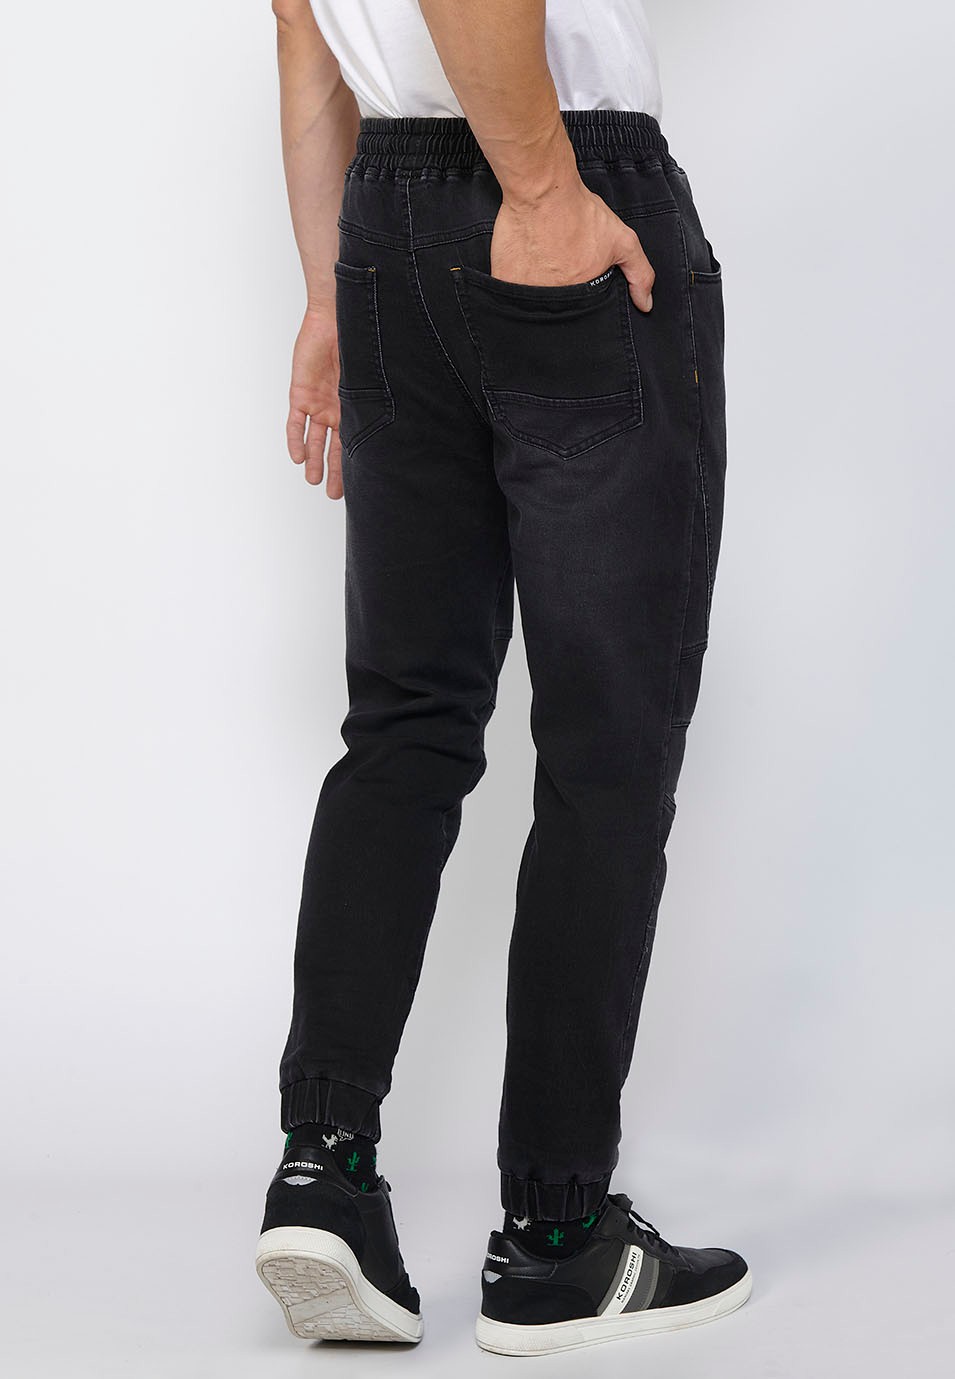 Pantalón largo jogger slim ajustado en tobillos con cintura ajustable con goma y cordón color Negro para Hombre 7